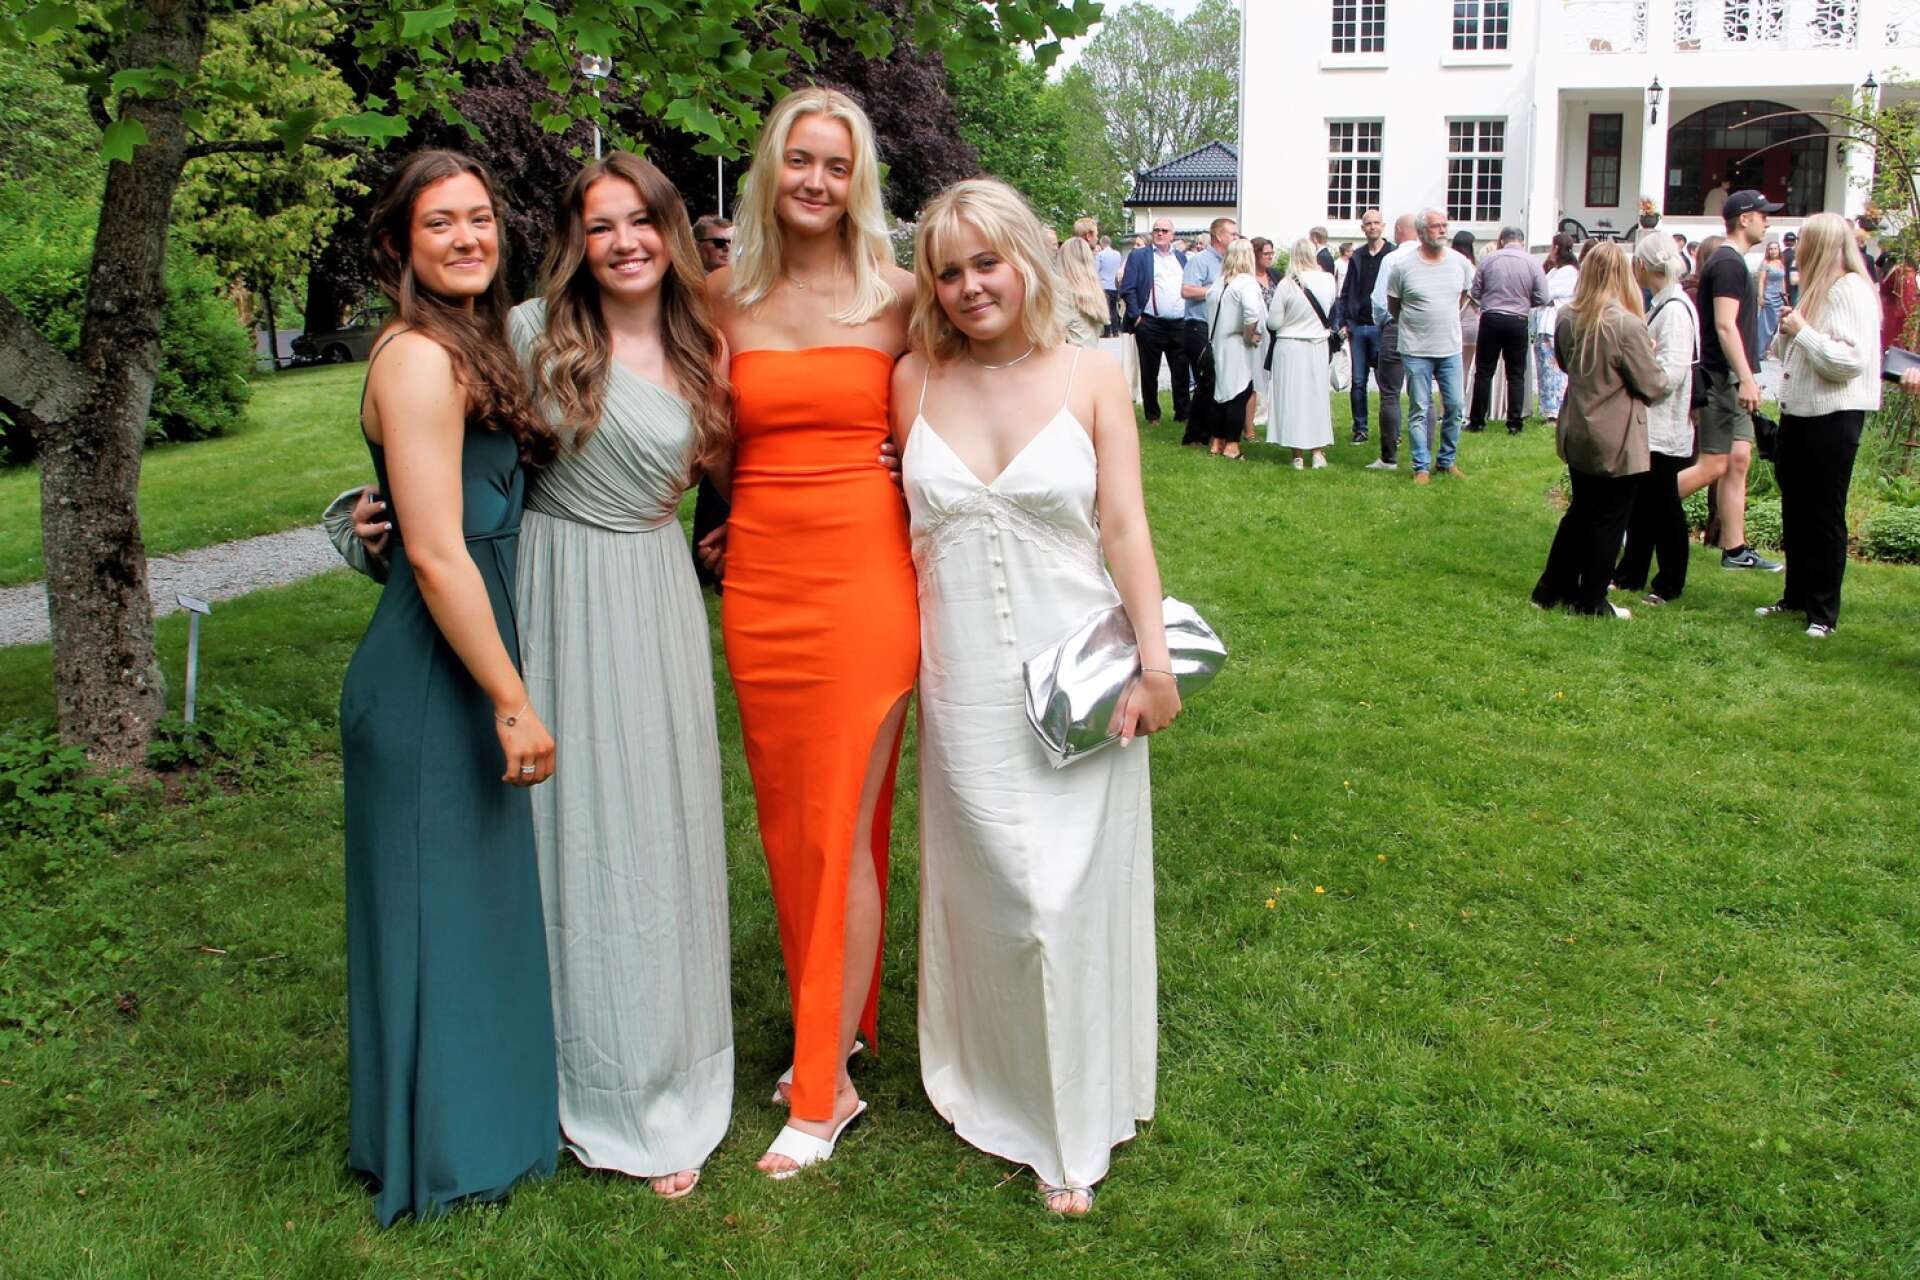 Meja Lorentzens orangefärgade klänning lyste mot allt det gröna i herrgårdsparken. Hon flankeras av Ella Mossberg, Evylin Karlsson och Ingrid Nilsson i likaledes tjusiga klänningar.